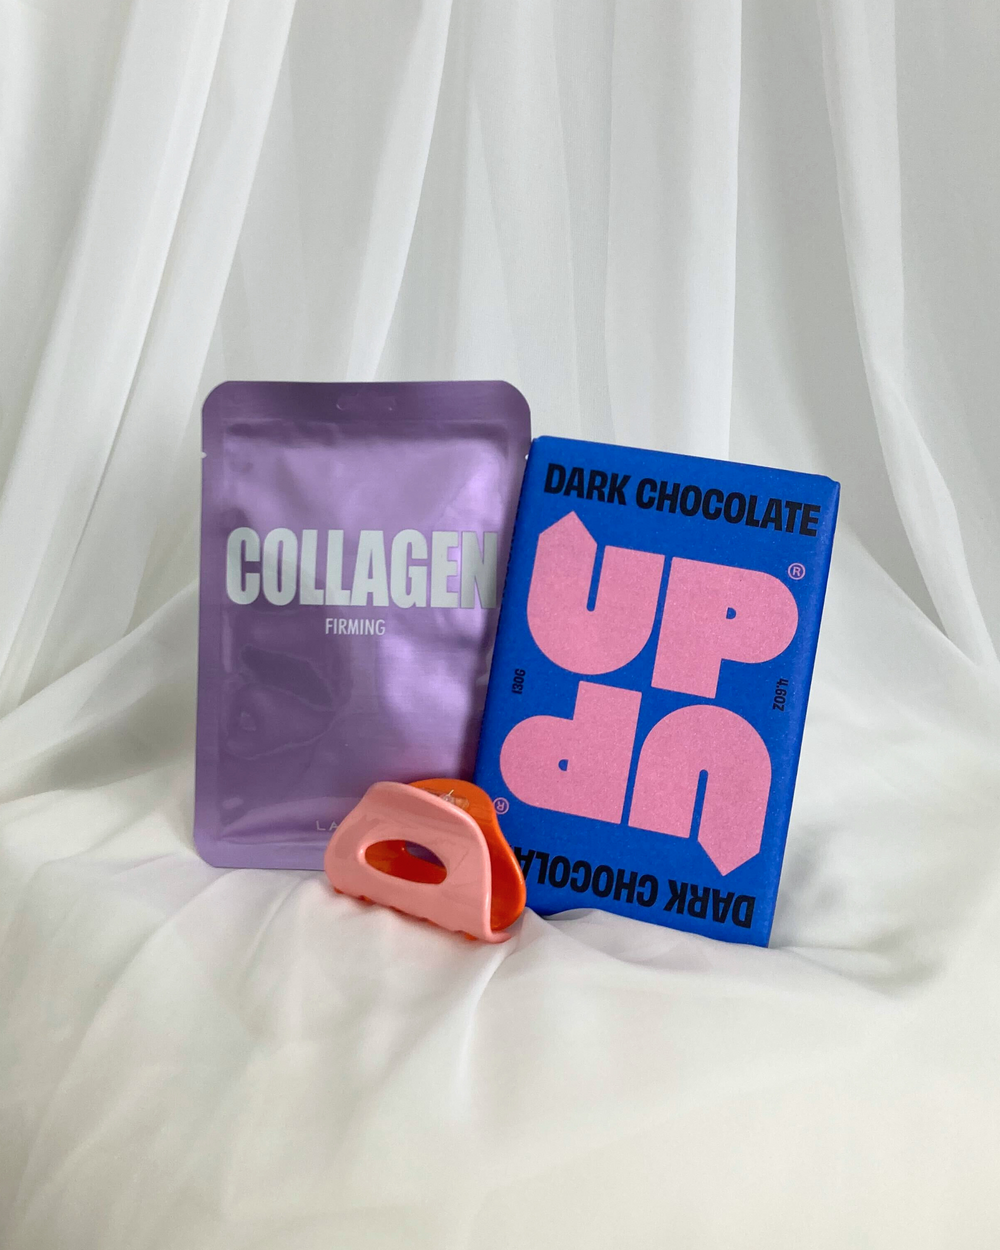 Netflix + Chill Gift Kit - Dark Chocolate / Collagen